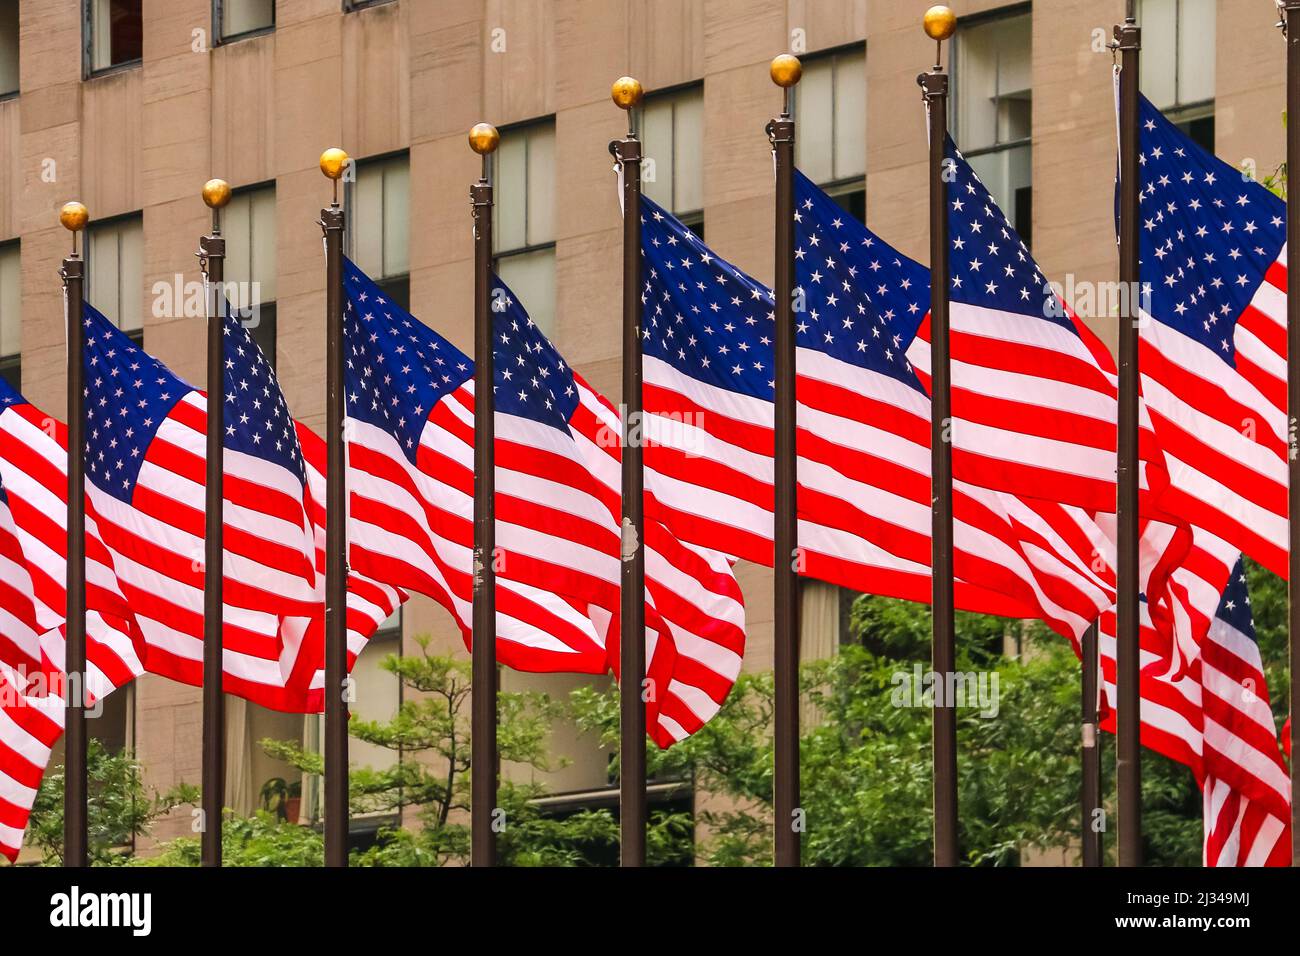 La bannière appelée Stars and Stripes forme le drapeau des États-Unis d'Amérique Banque D'Images